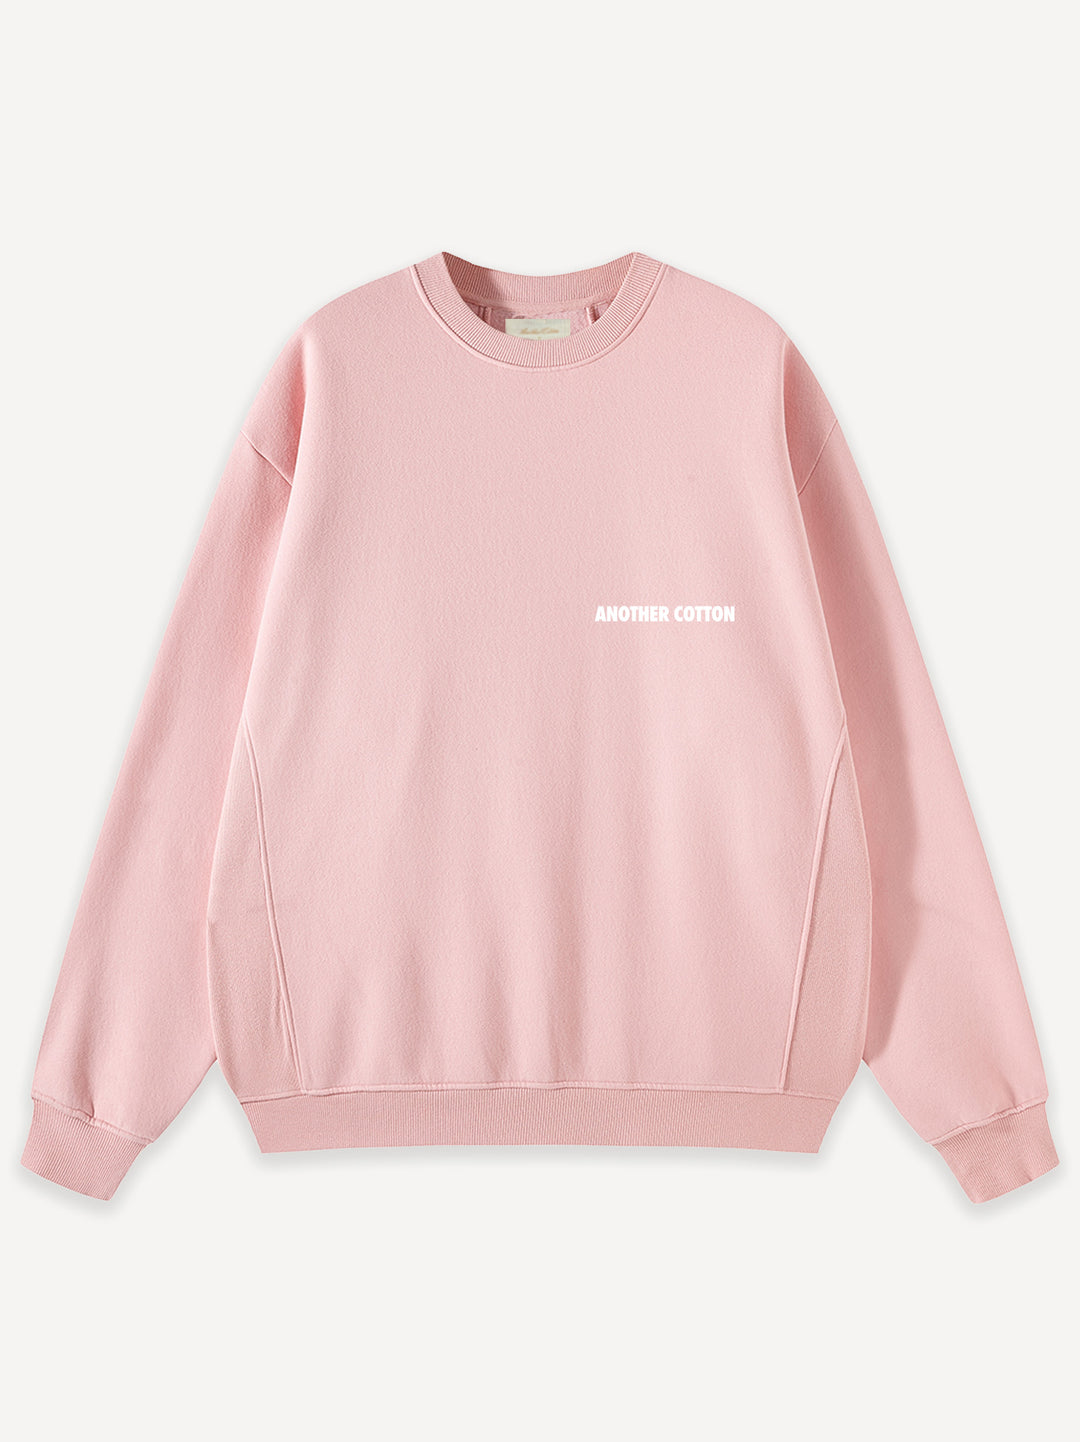 What If Oversized Sweatshirt